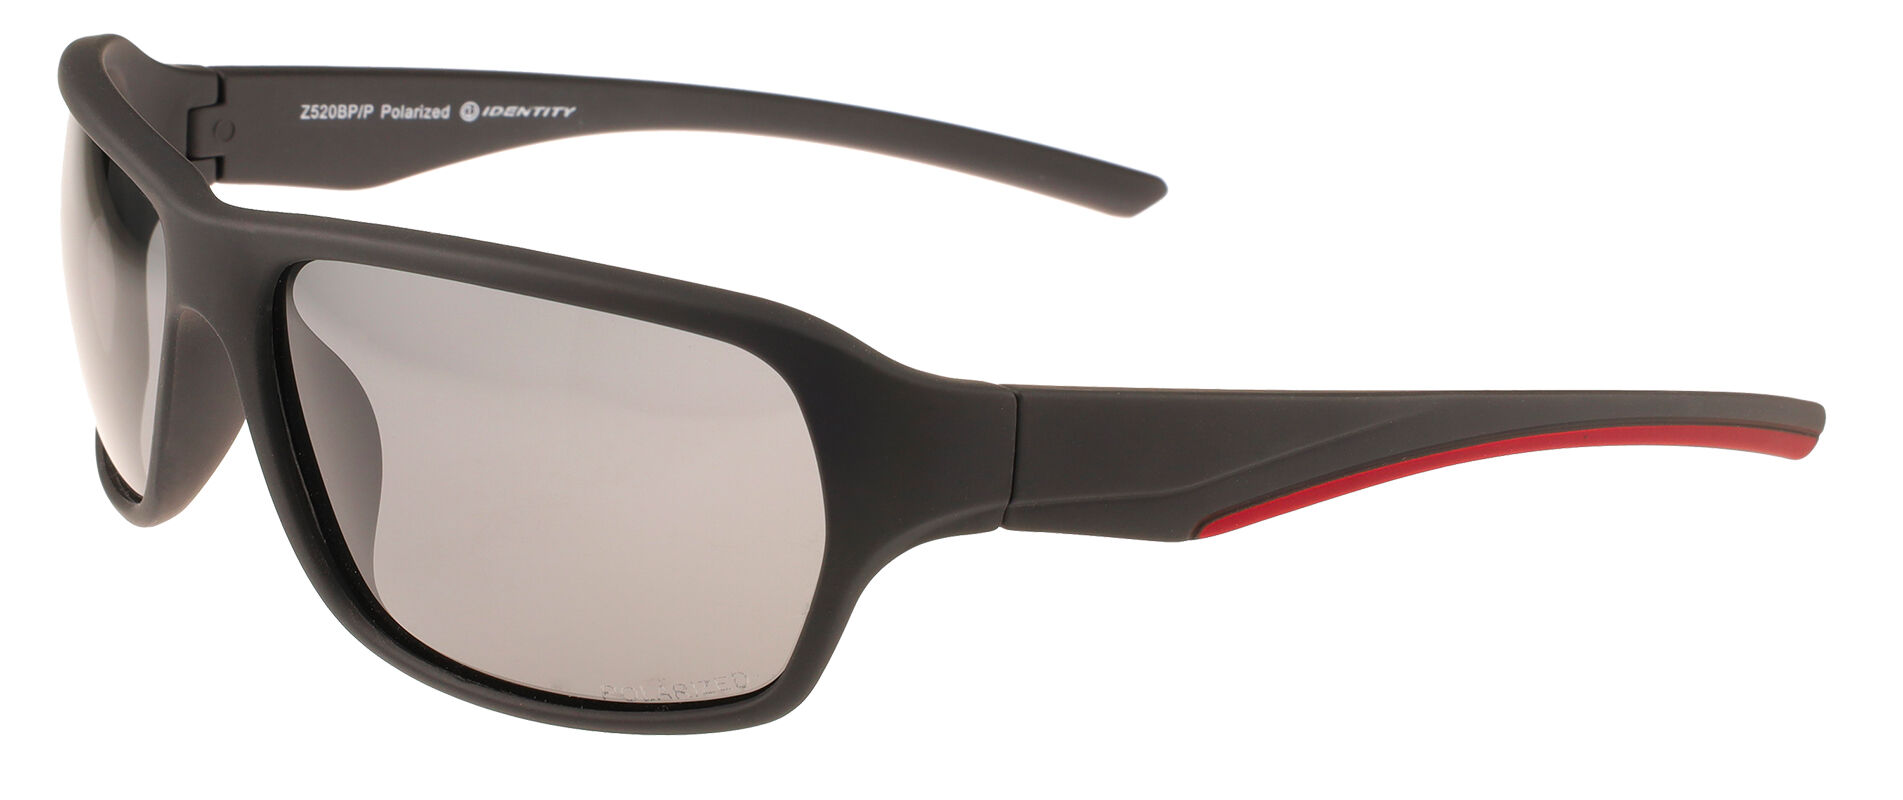 Sluneční brýle polarizační Sport /Z505DP/P-520BP/P